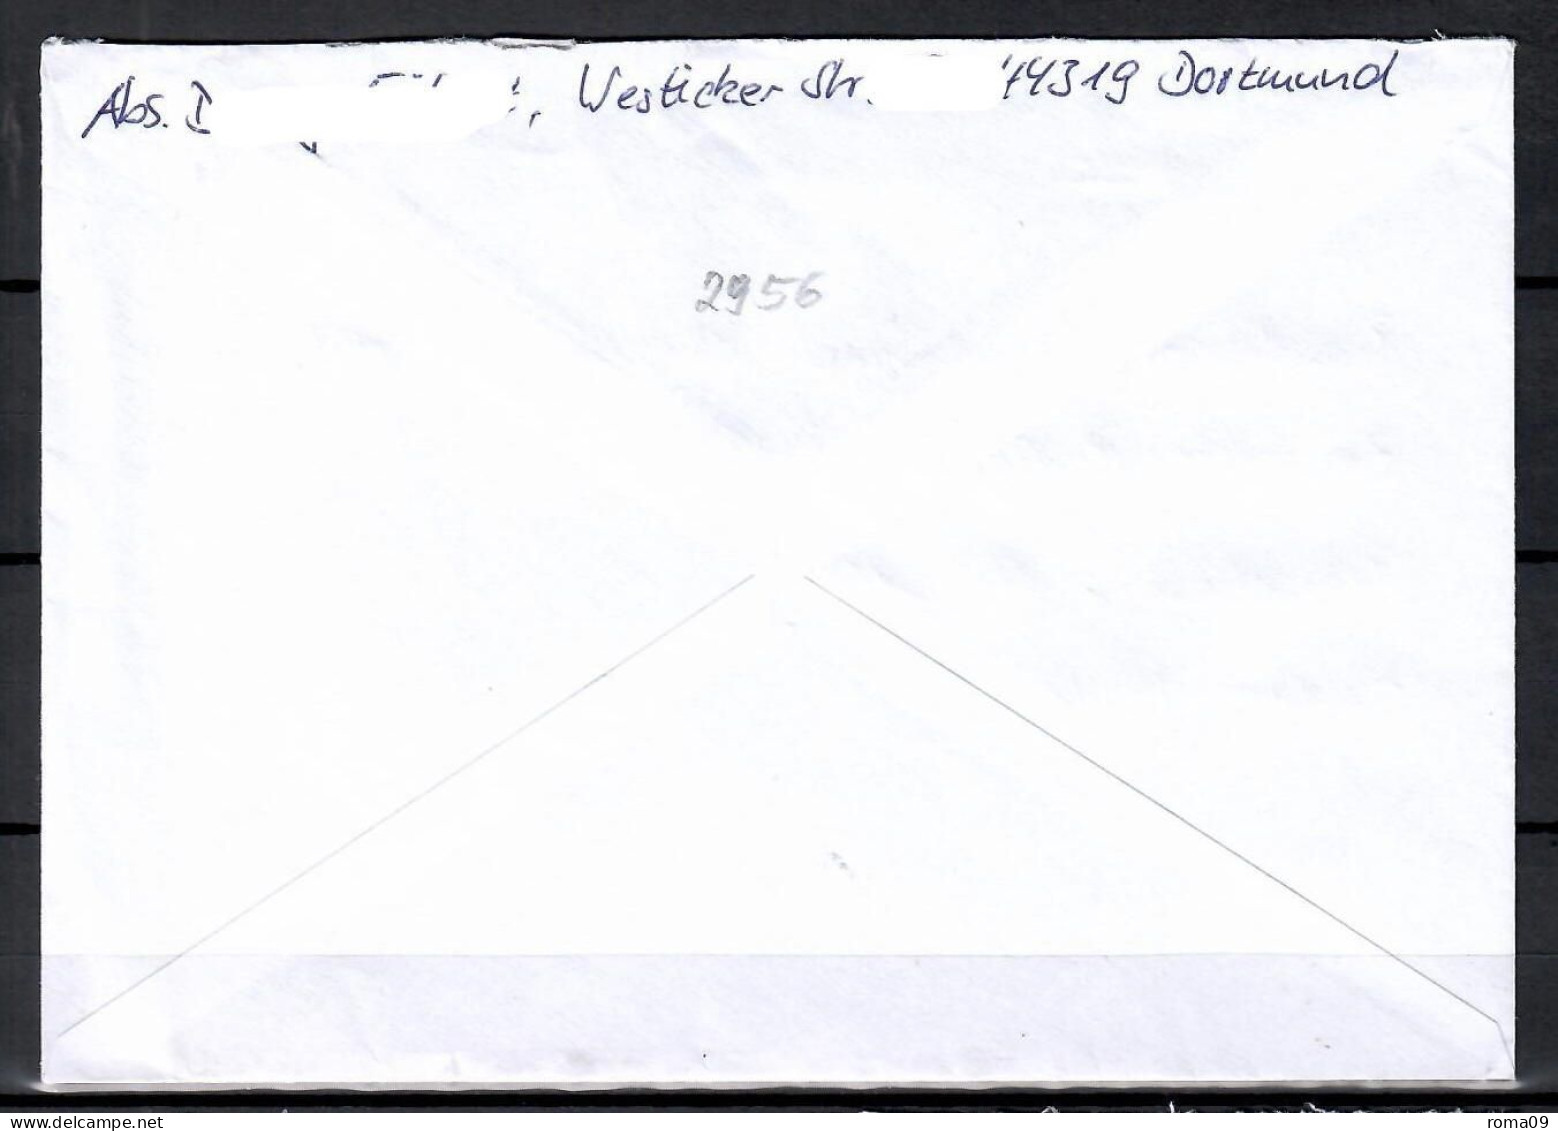 MiNr. 2956; 100 J. Deutsche Nationalbibliothek Auf Portoger. Brief Von BZ 44 Nach Halle/Saale; B-878 - Brieven En Documenten